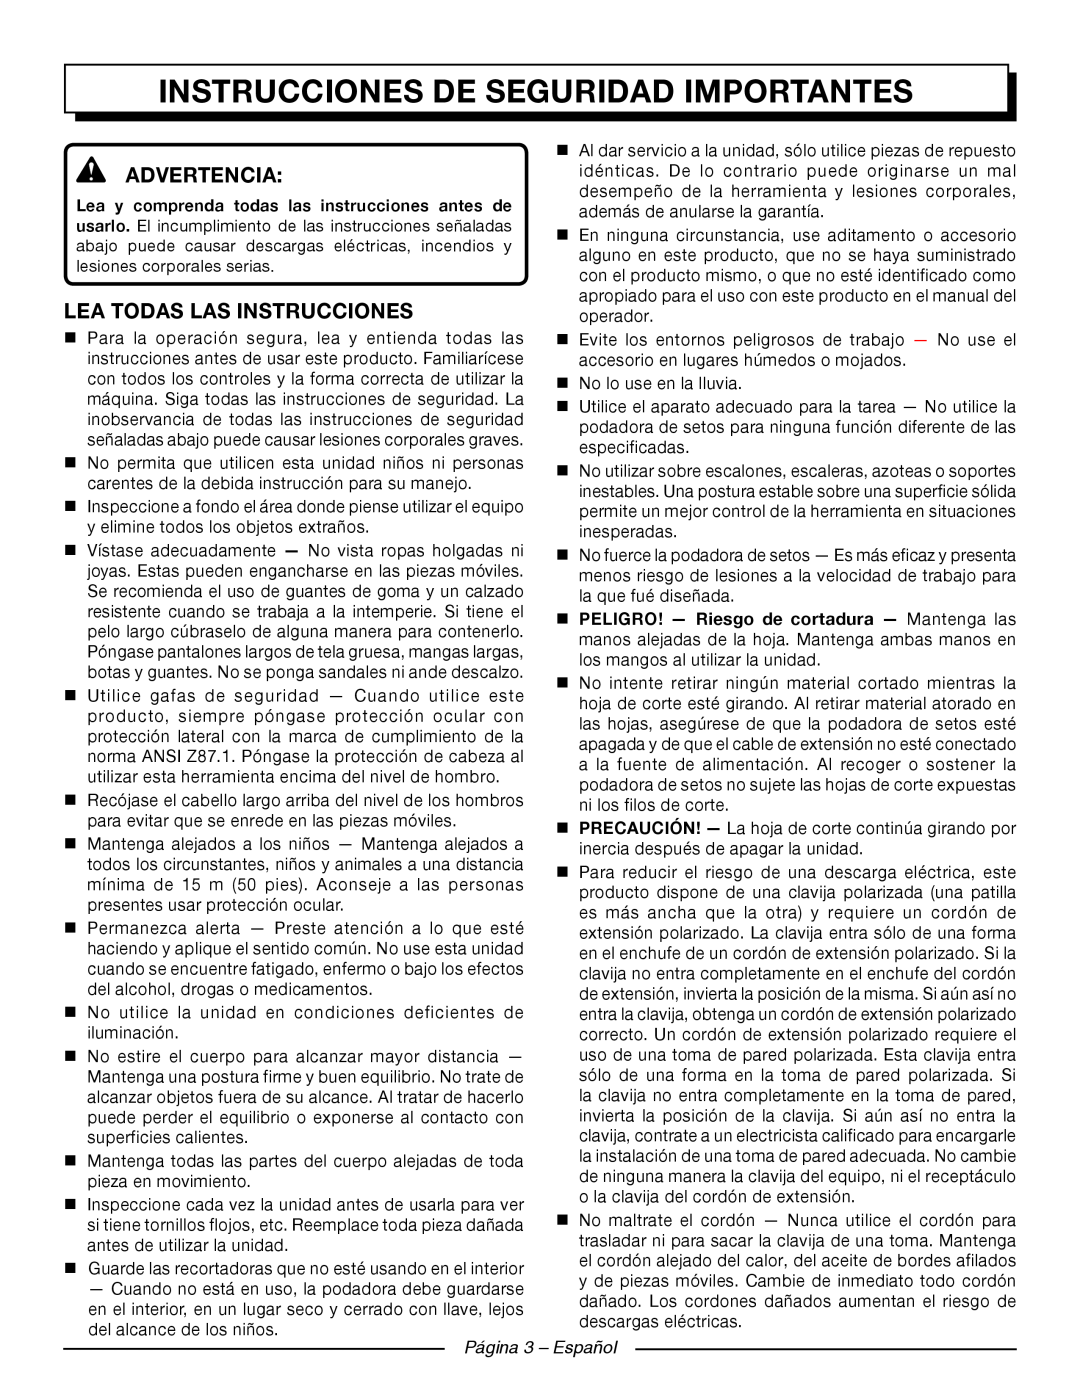 Homelite UT44121 Instrucciones De Seguridad Importantes, Advertencia, Lea Todas Las Instrucciones, Página 3 - Español 